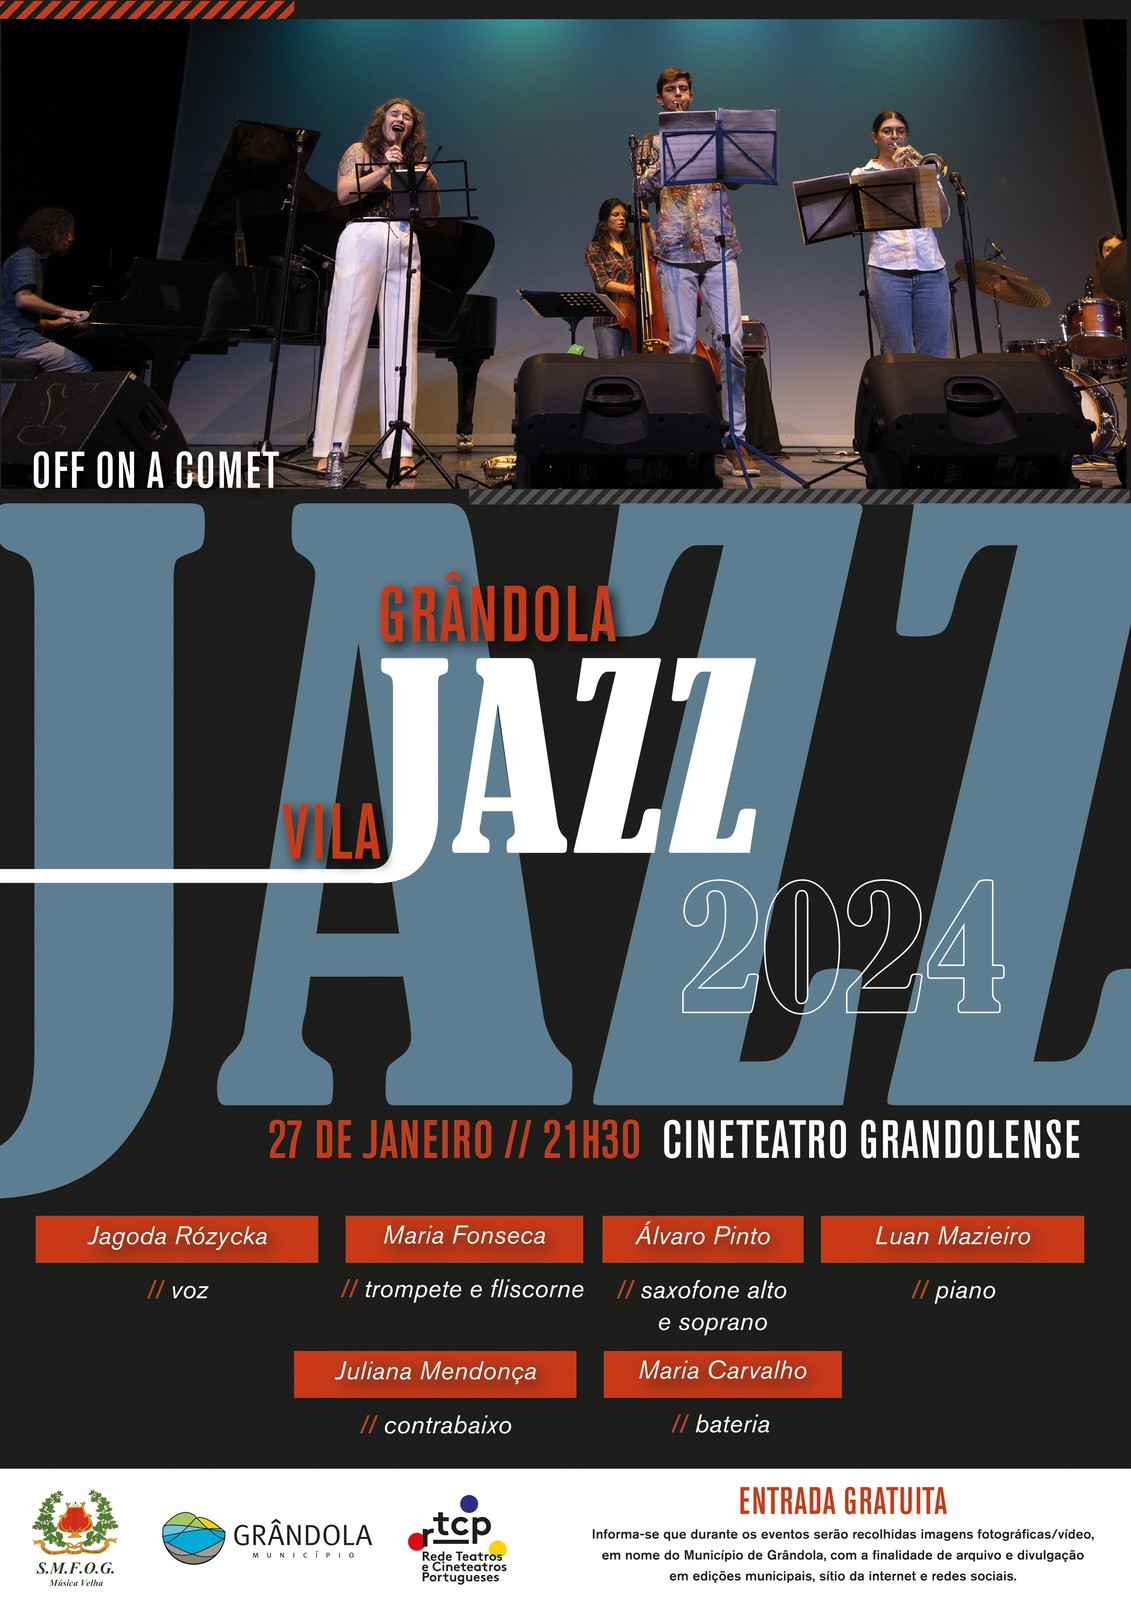 Grândola, Vila Jazz | Espetáculo com «Off On a Comet»